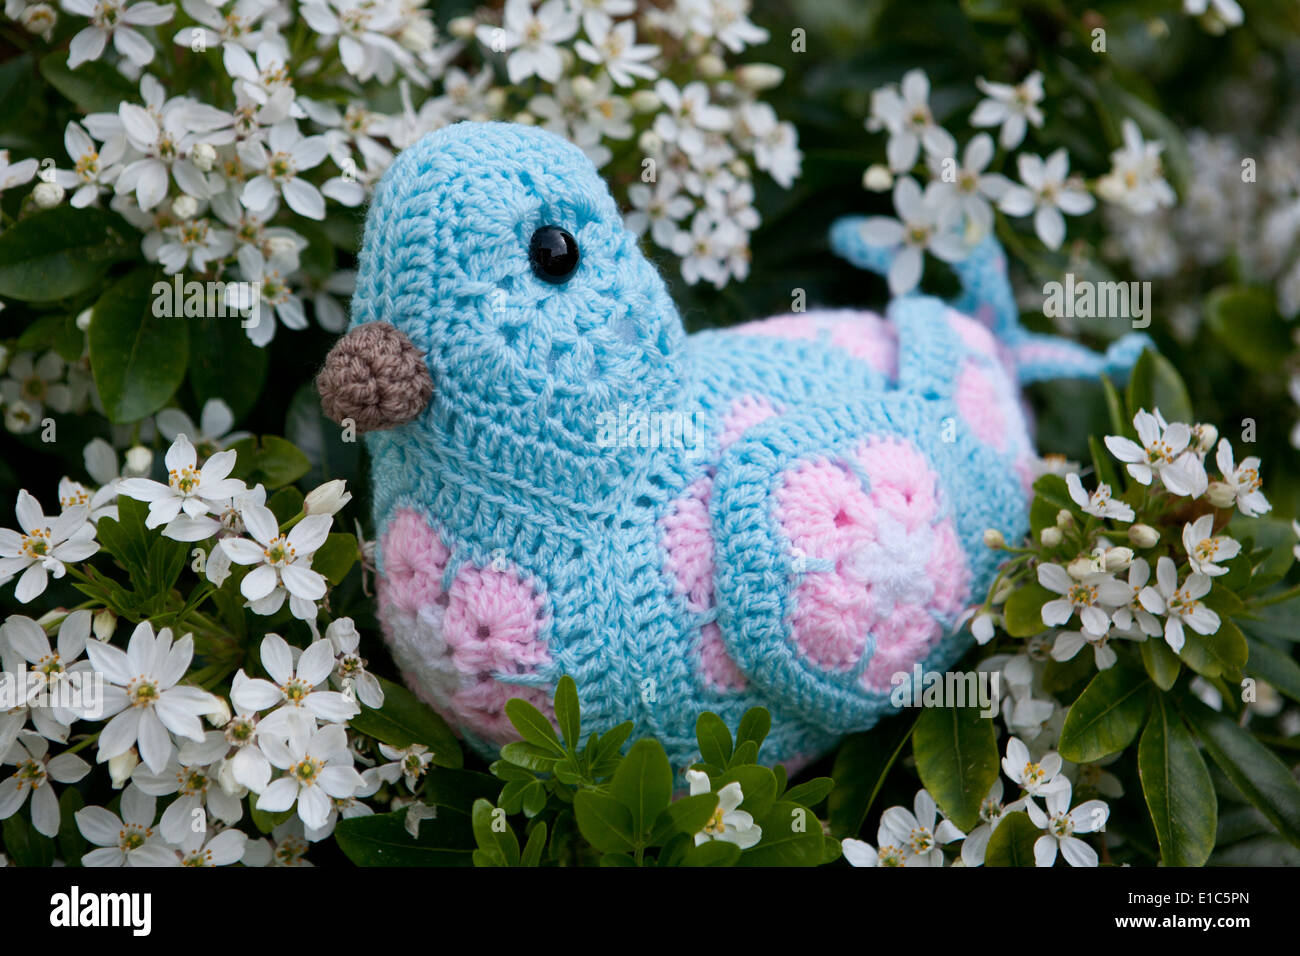 Handmade crocheted toy bird using African Flower Pentagons motifs Stock Photo